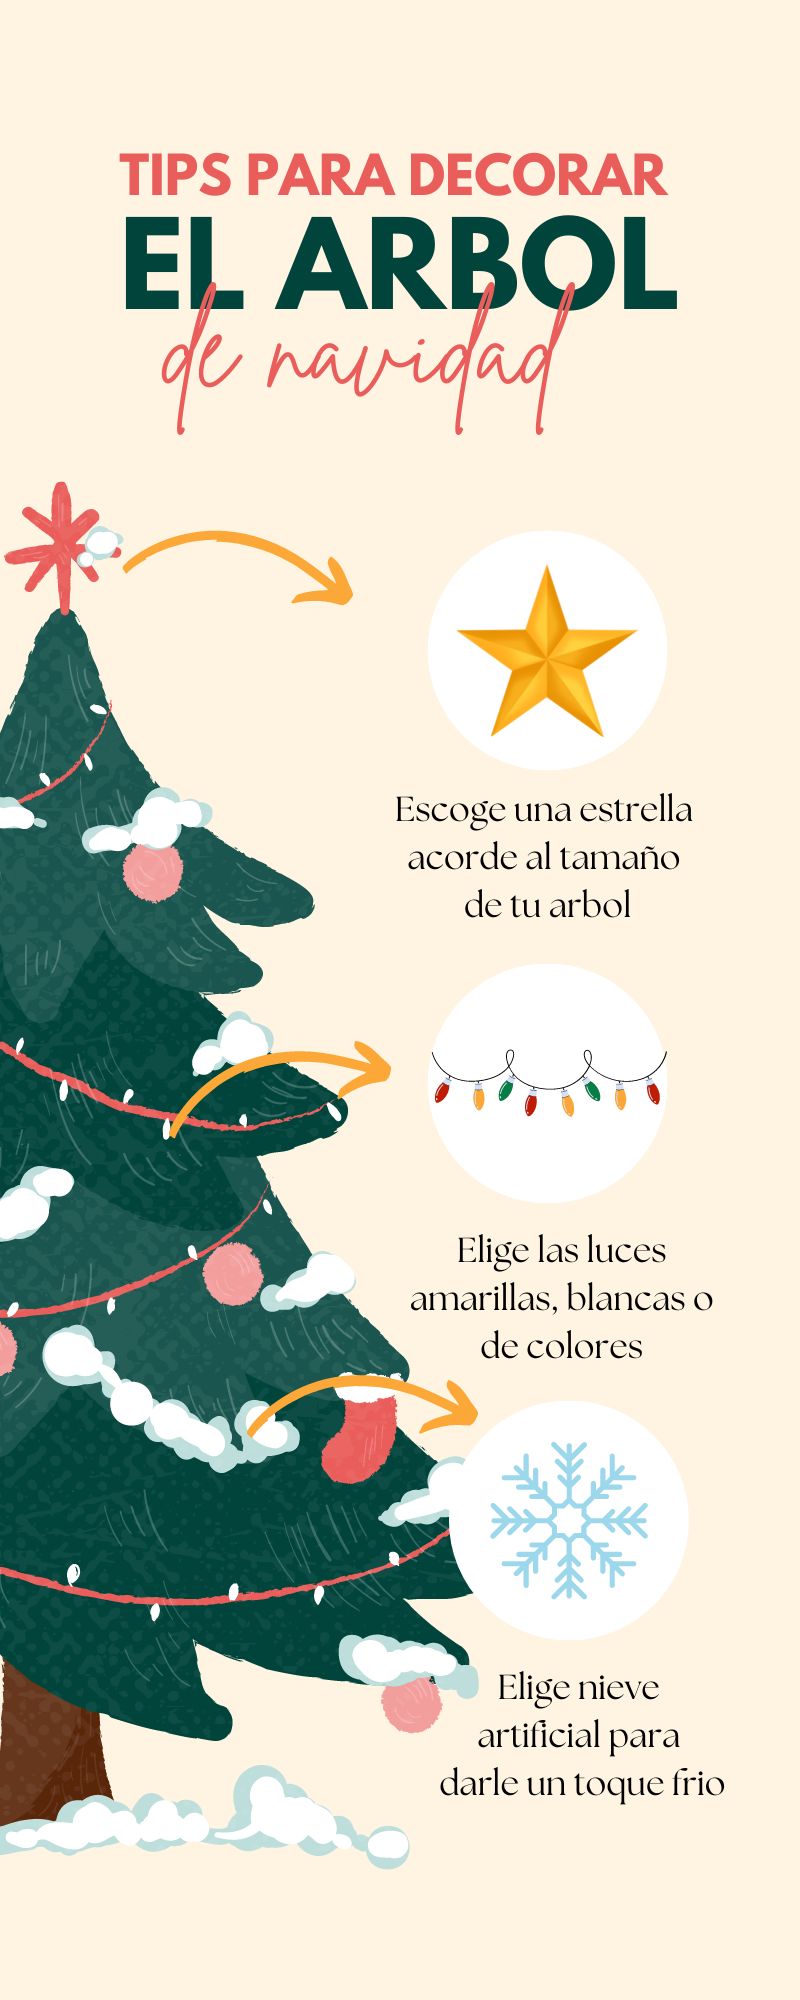 Infografia Sobre Tips Para Decorar El Arbol De Navidad